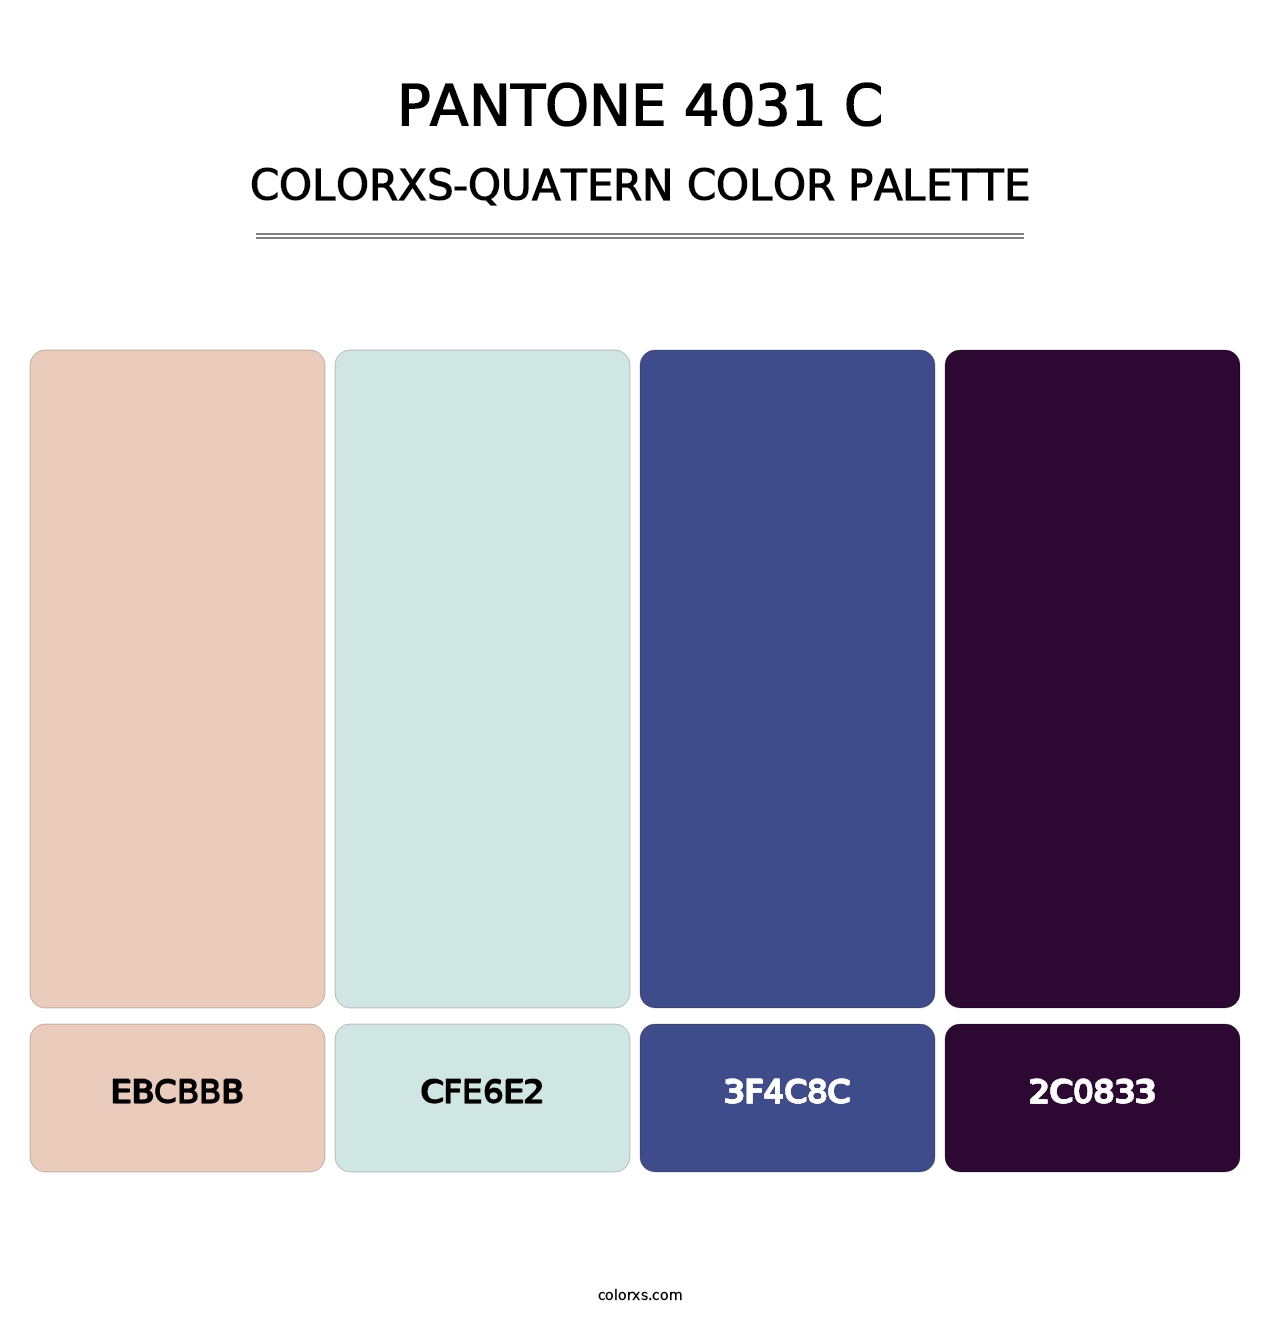 PANTONE 4031 C - Colorxs Quatern Palette